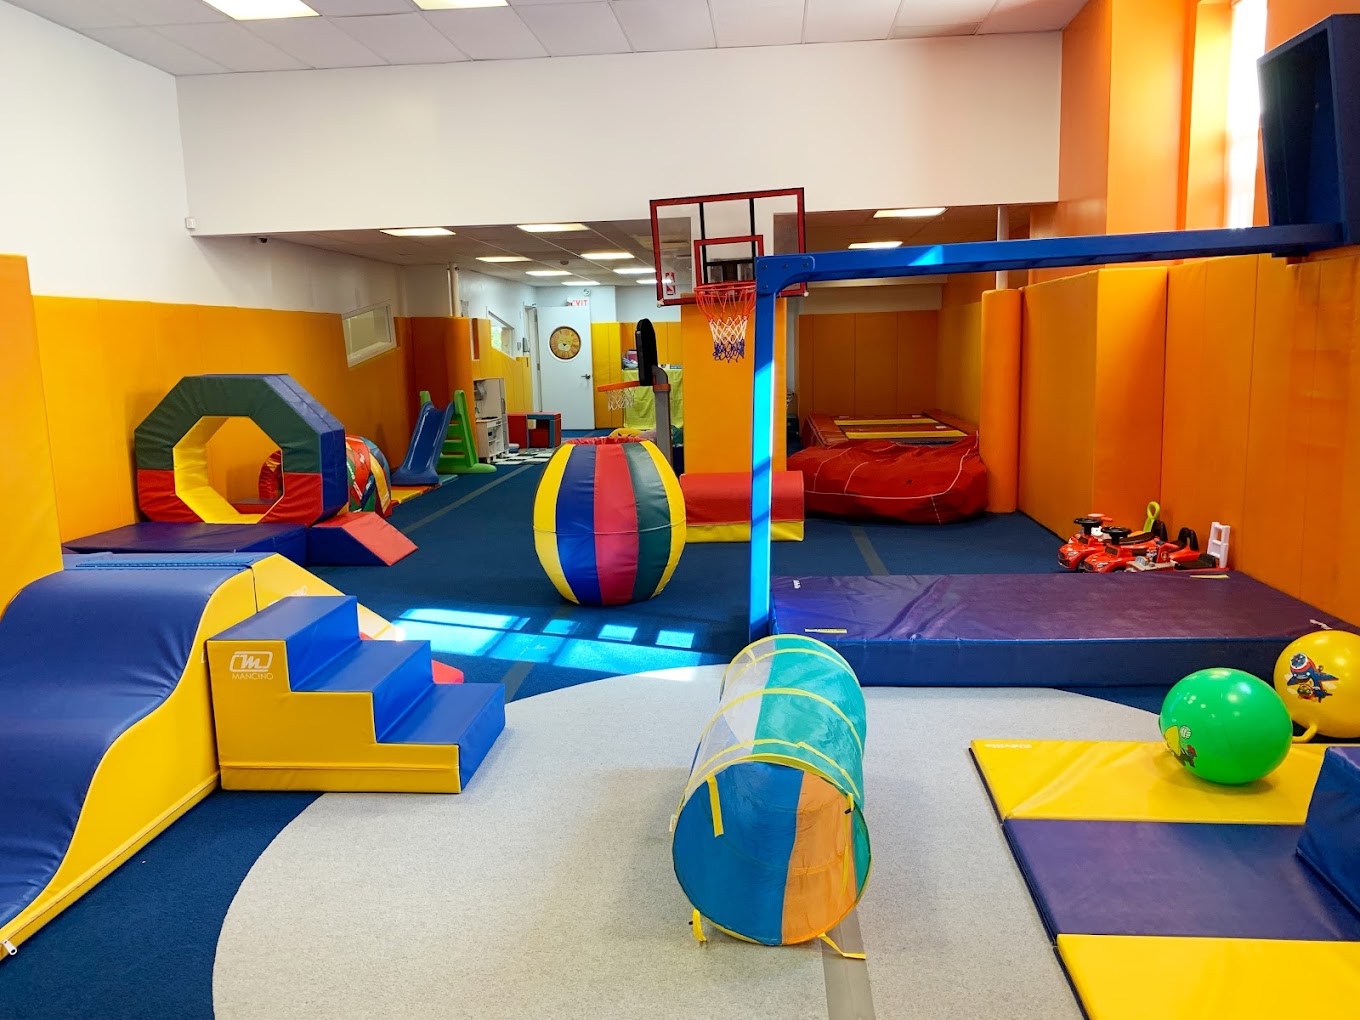 Onzeker bunker anders Best drop-in indoor activities for kids in Brooklyn | Brooklyn Bridge  Parents - News and Events for Brooklyn families